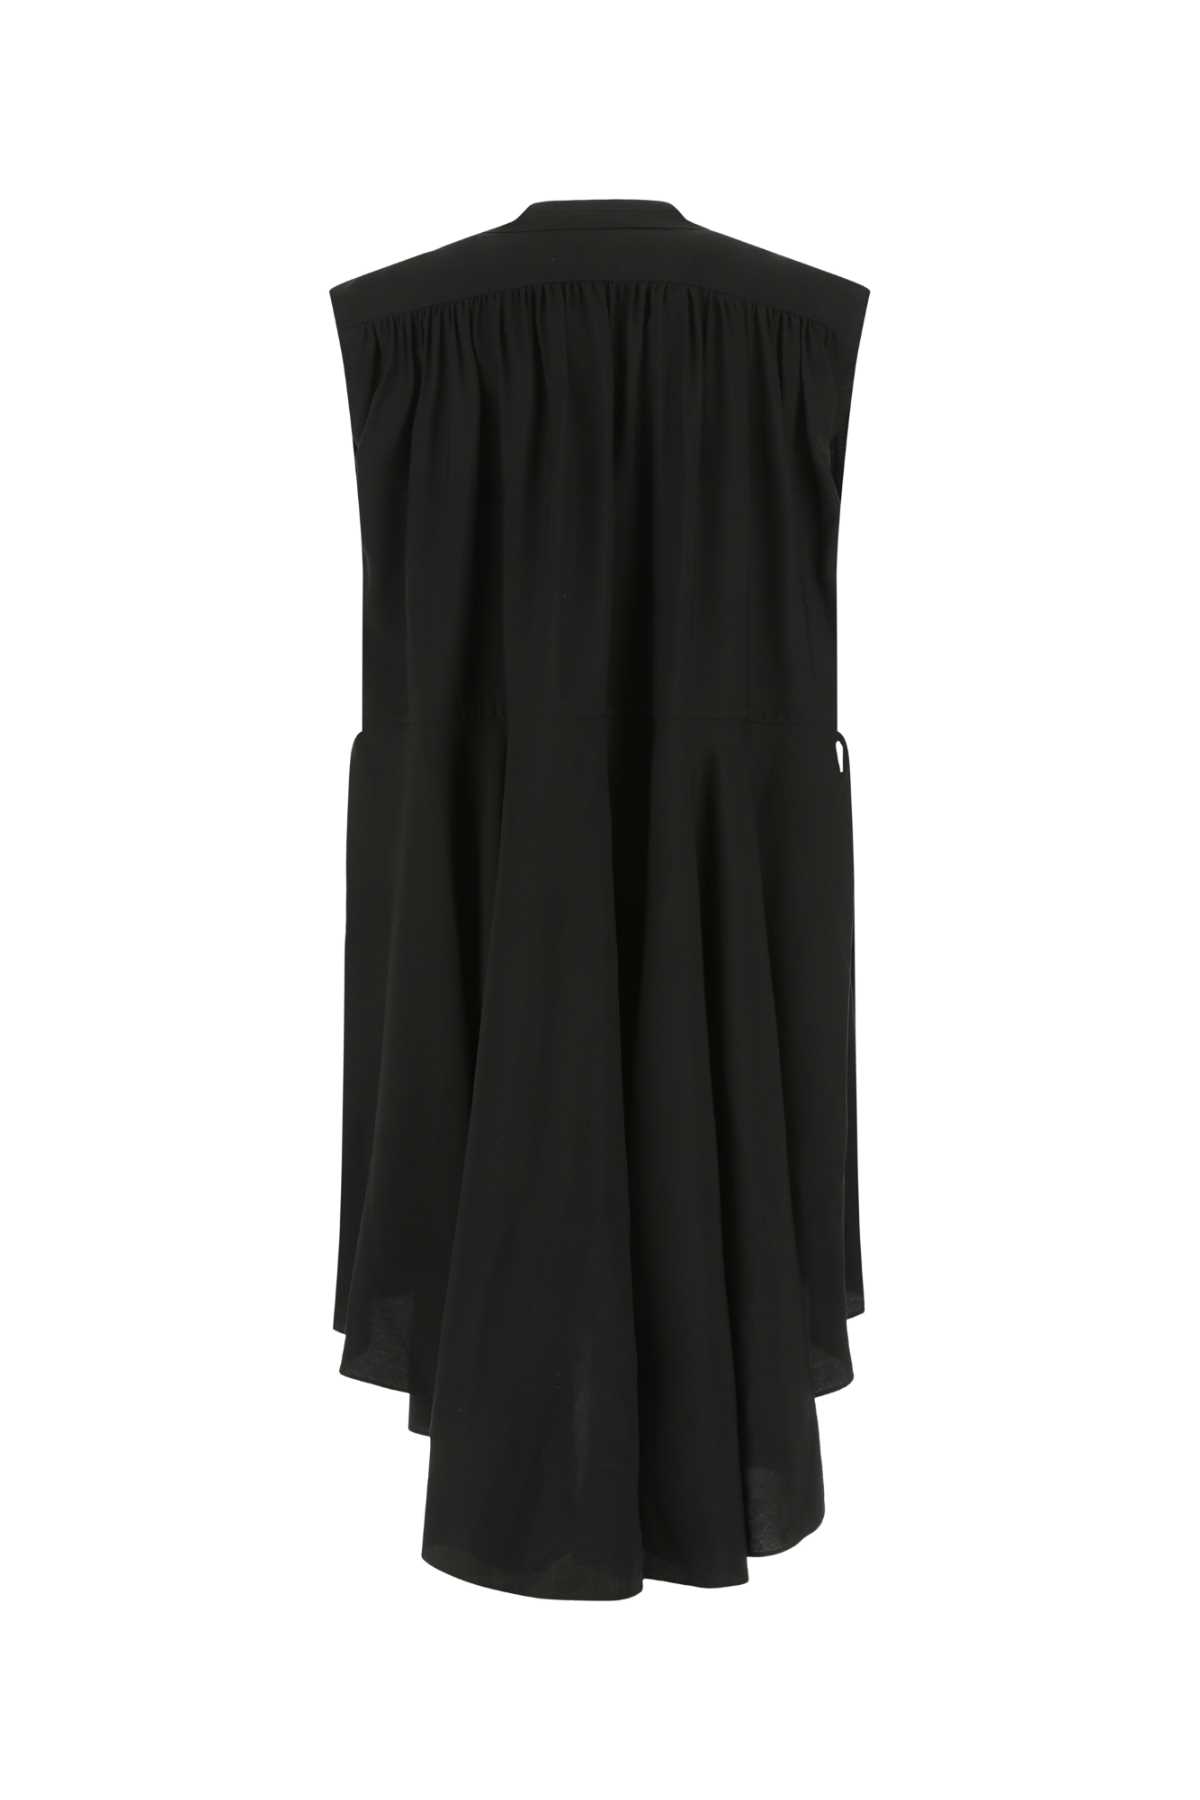 Quira Black Viscose Blend Oversize Dress In Q0009